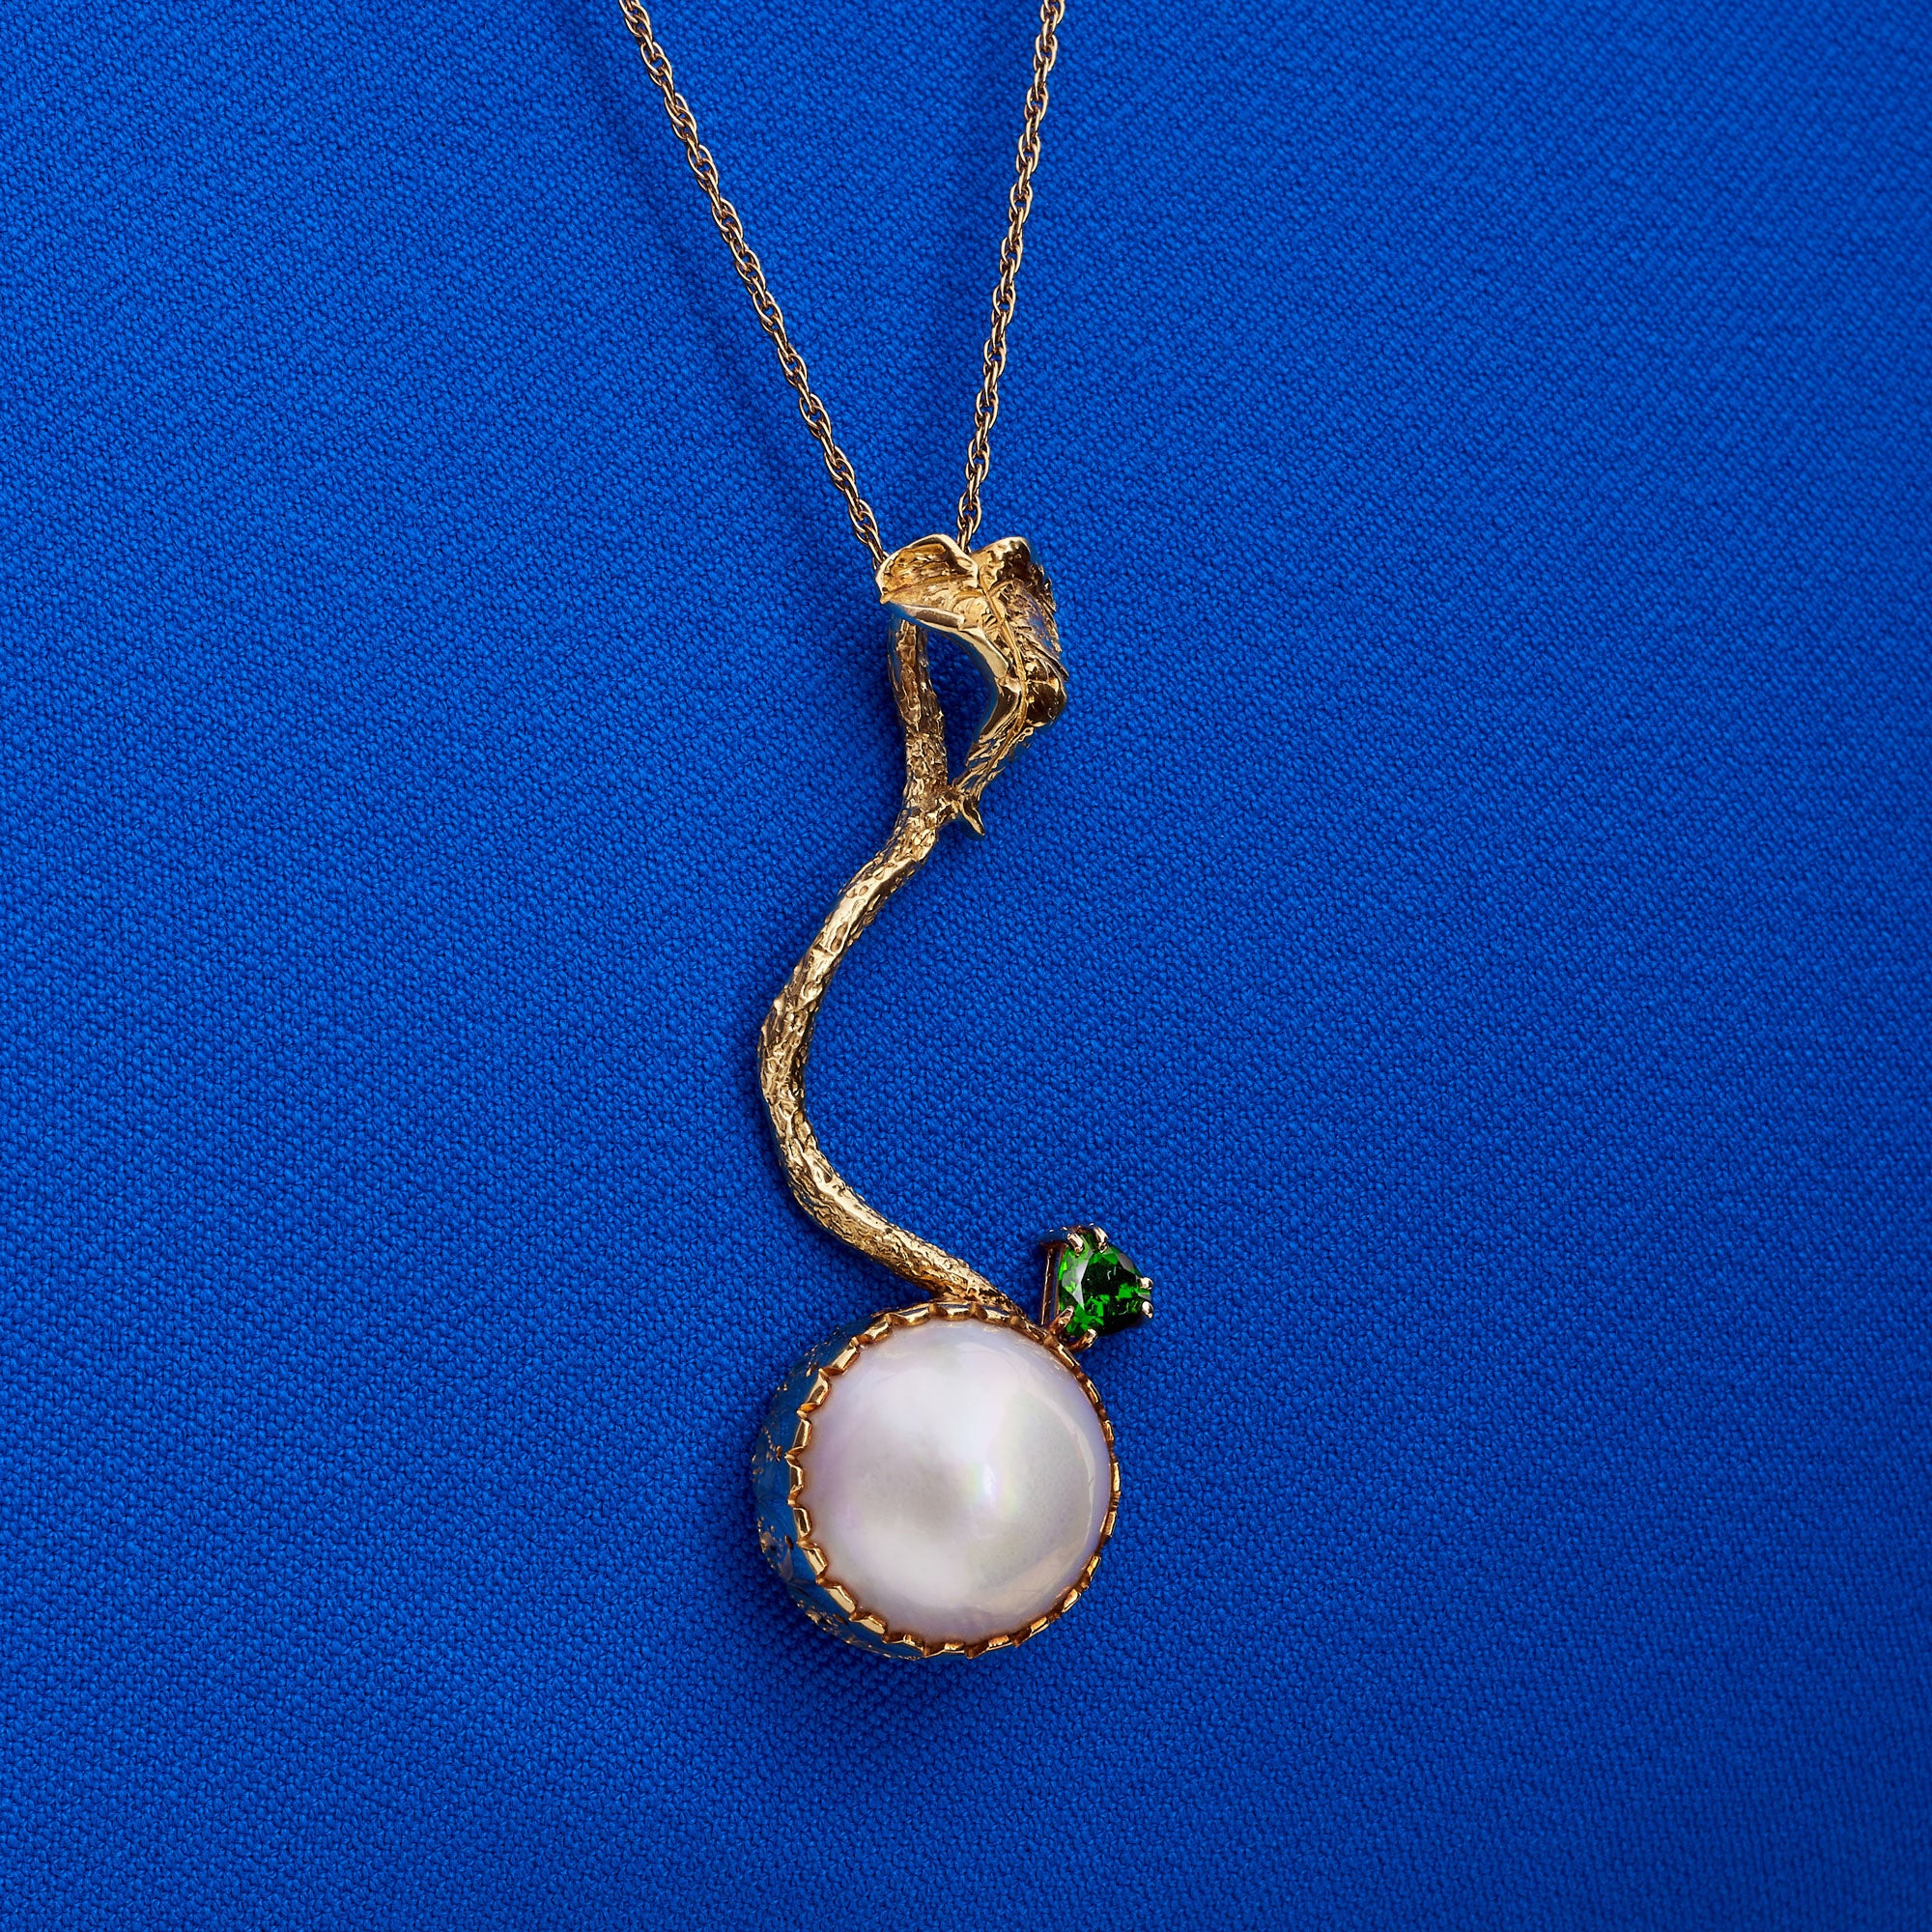 Original Pearl of Great Price® Pendant